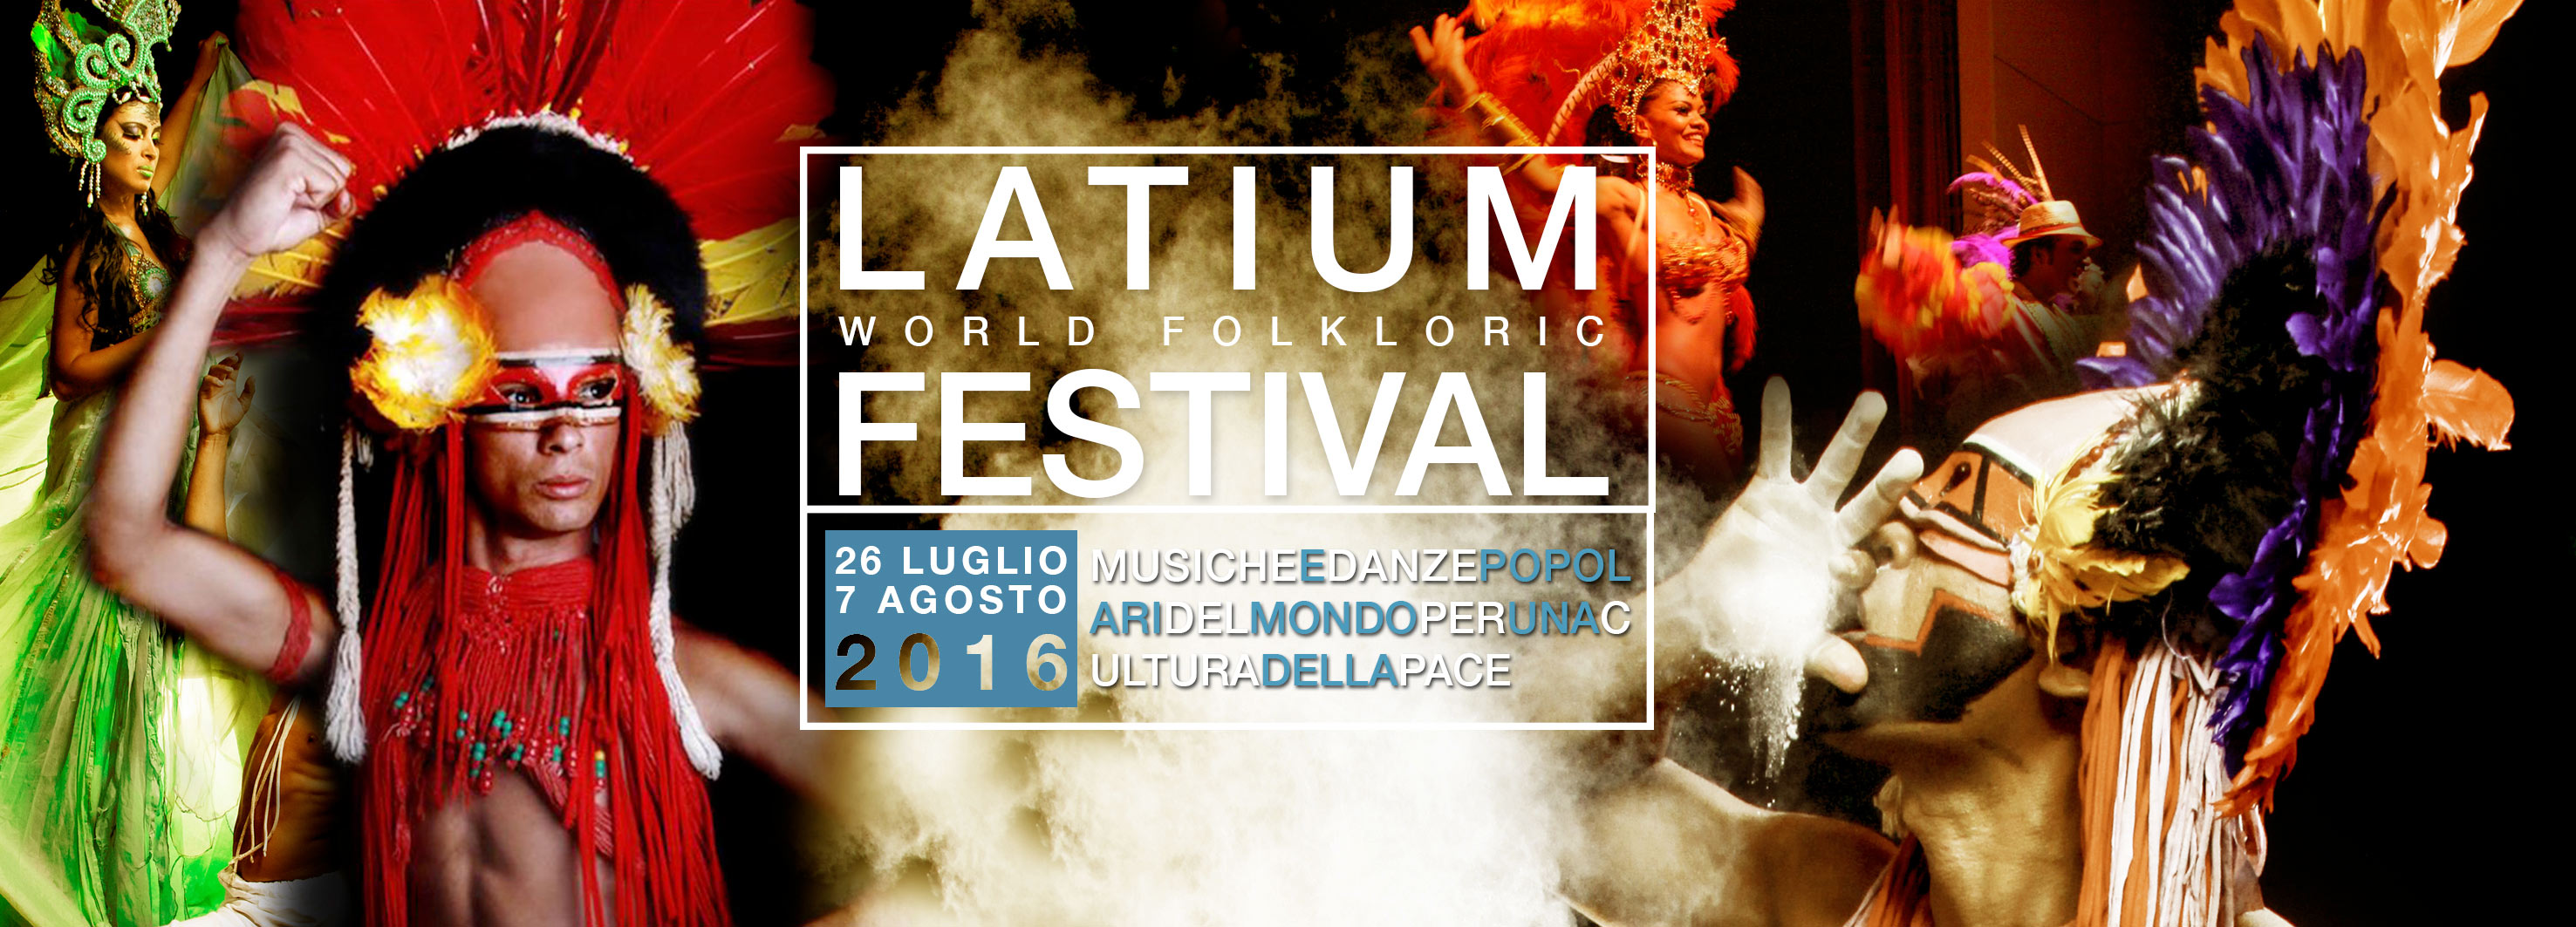 latium festival 2016